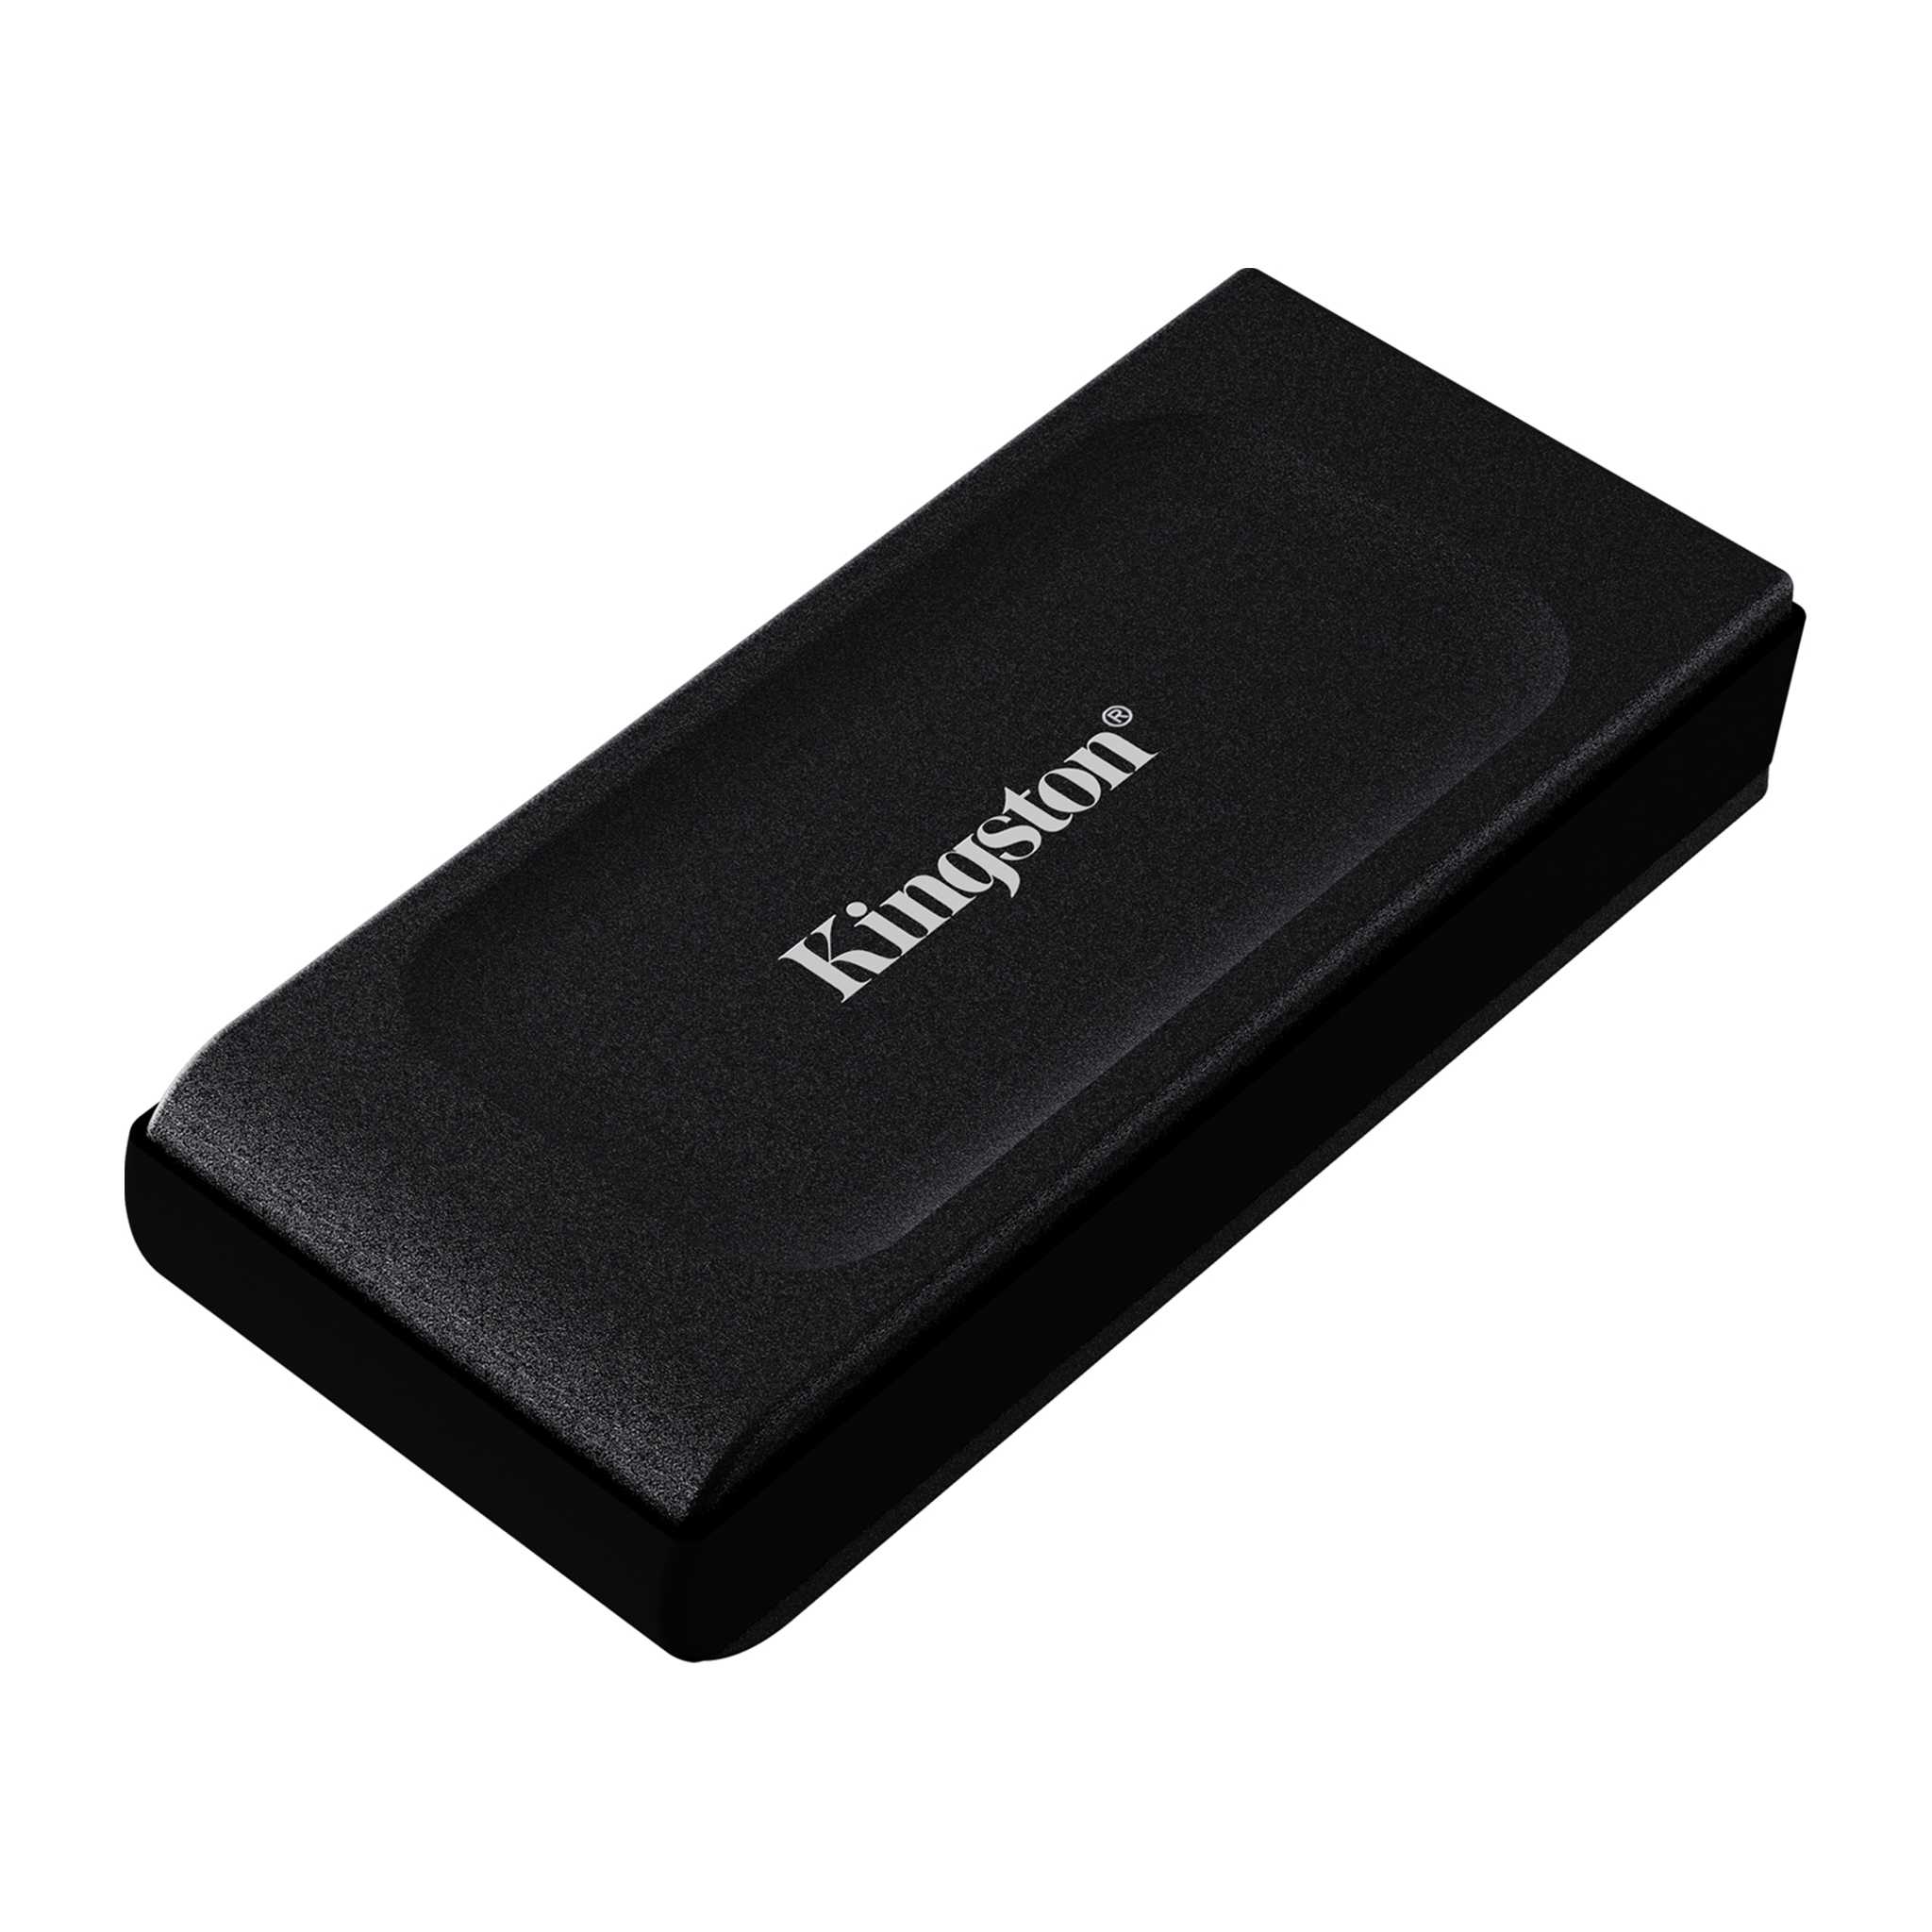 KINGSTONE 1TB XS1000 External USB 3.2 Gen 2 Portable SSD